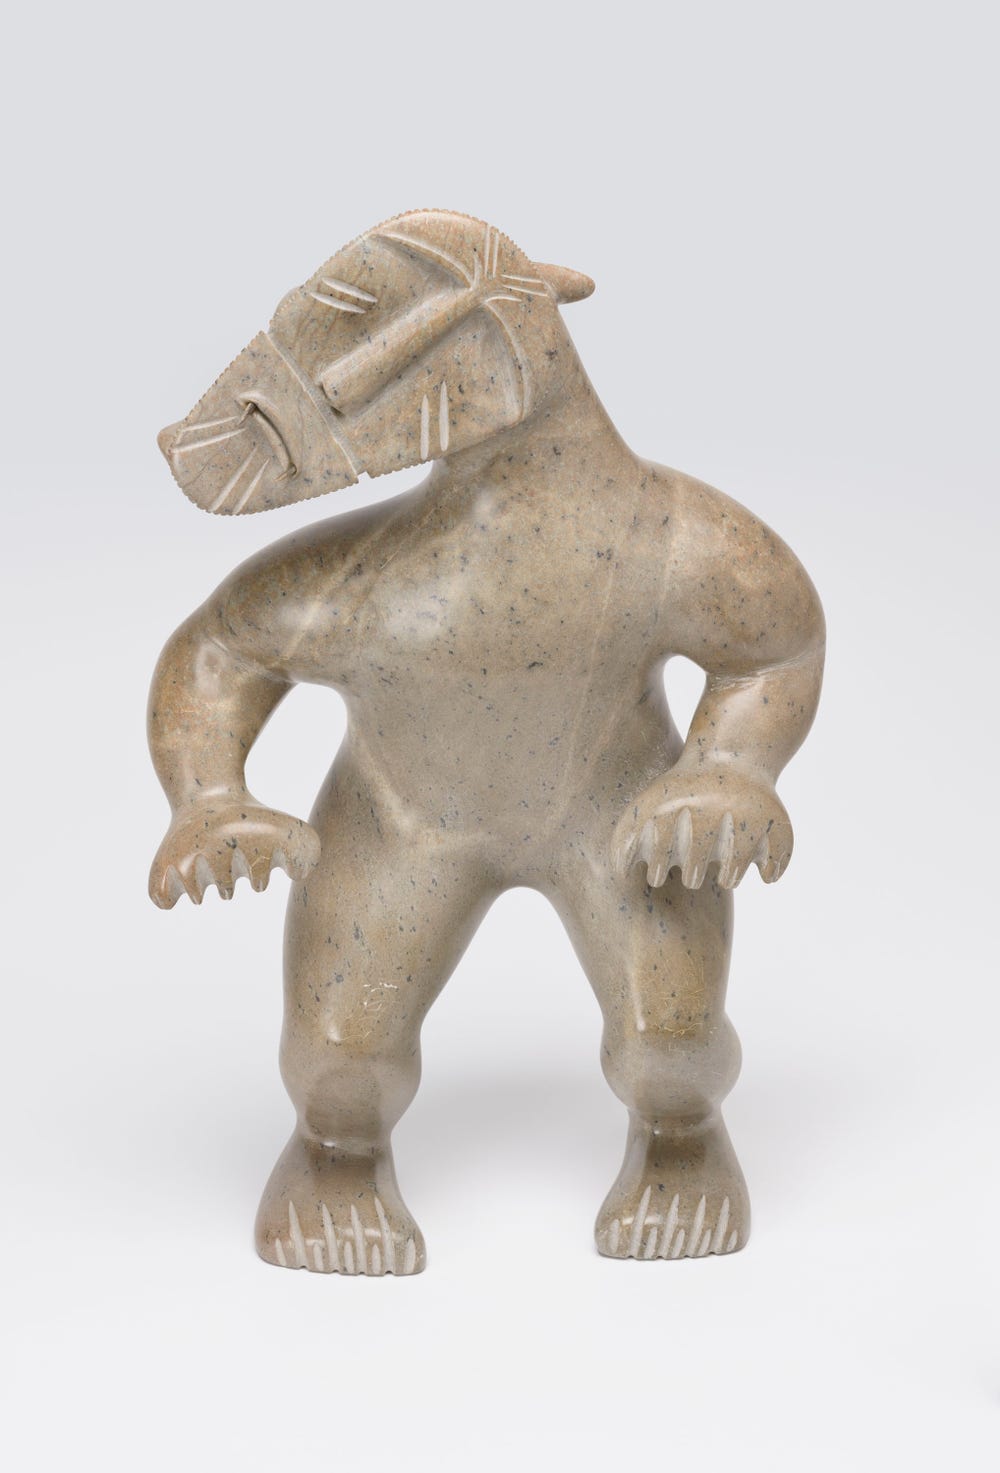 bear-like figurine